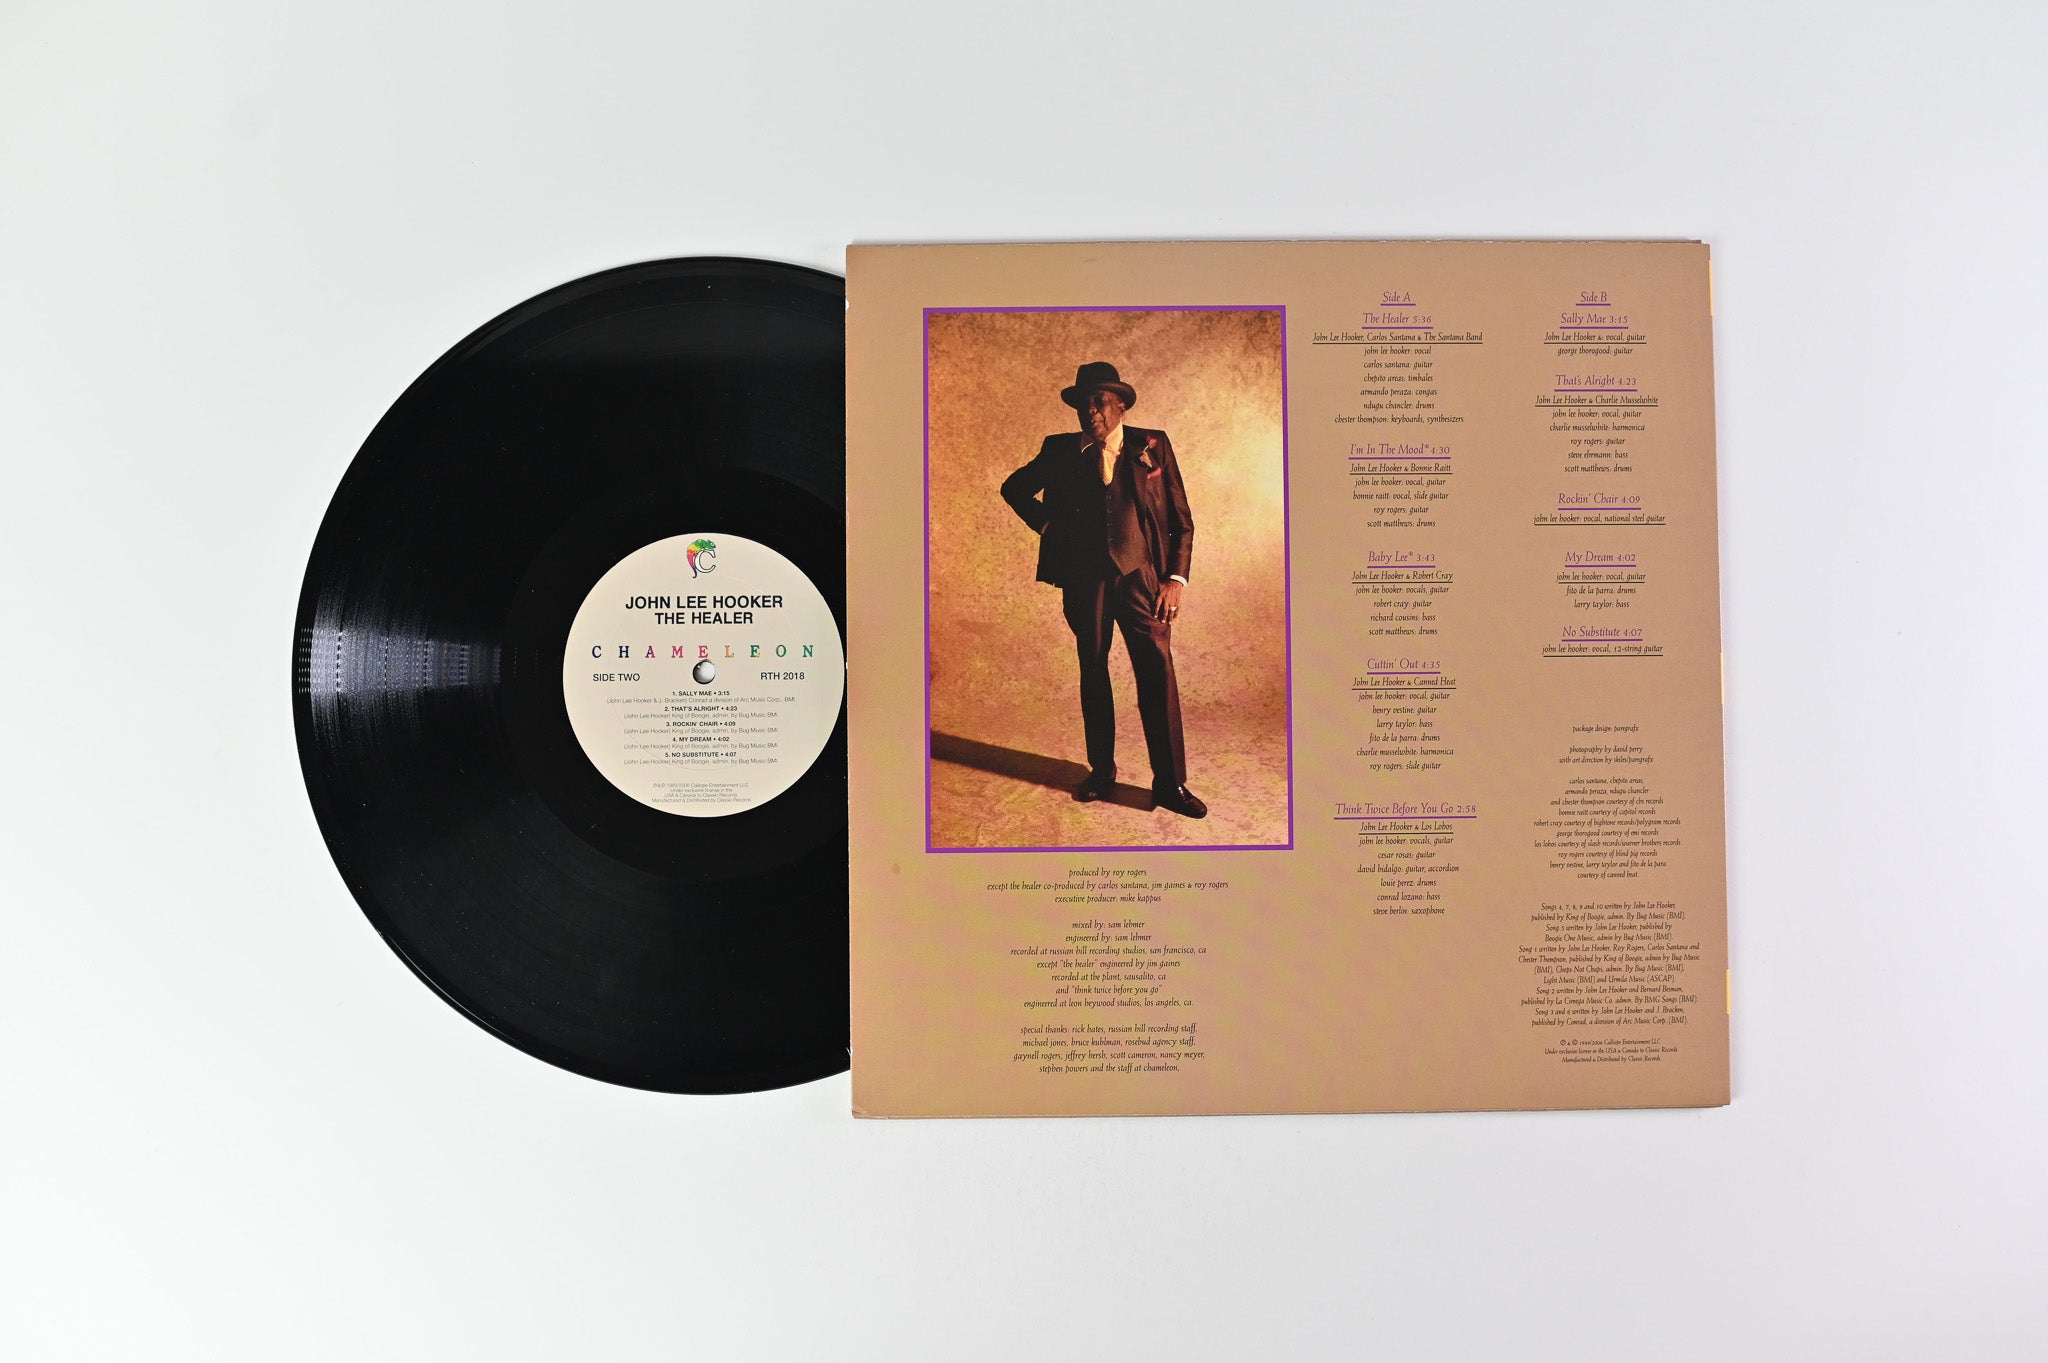 John Lee Hooker - The Healer on Classic Records Reissue